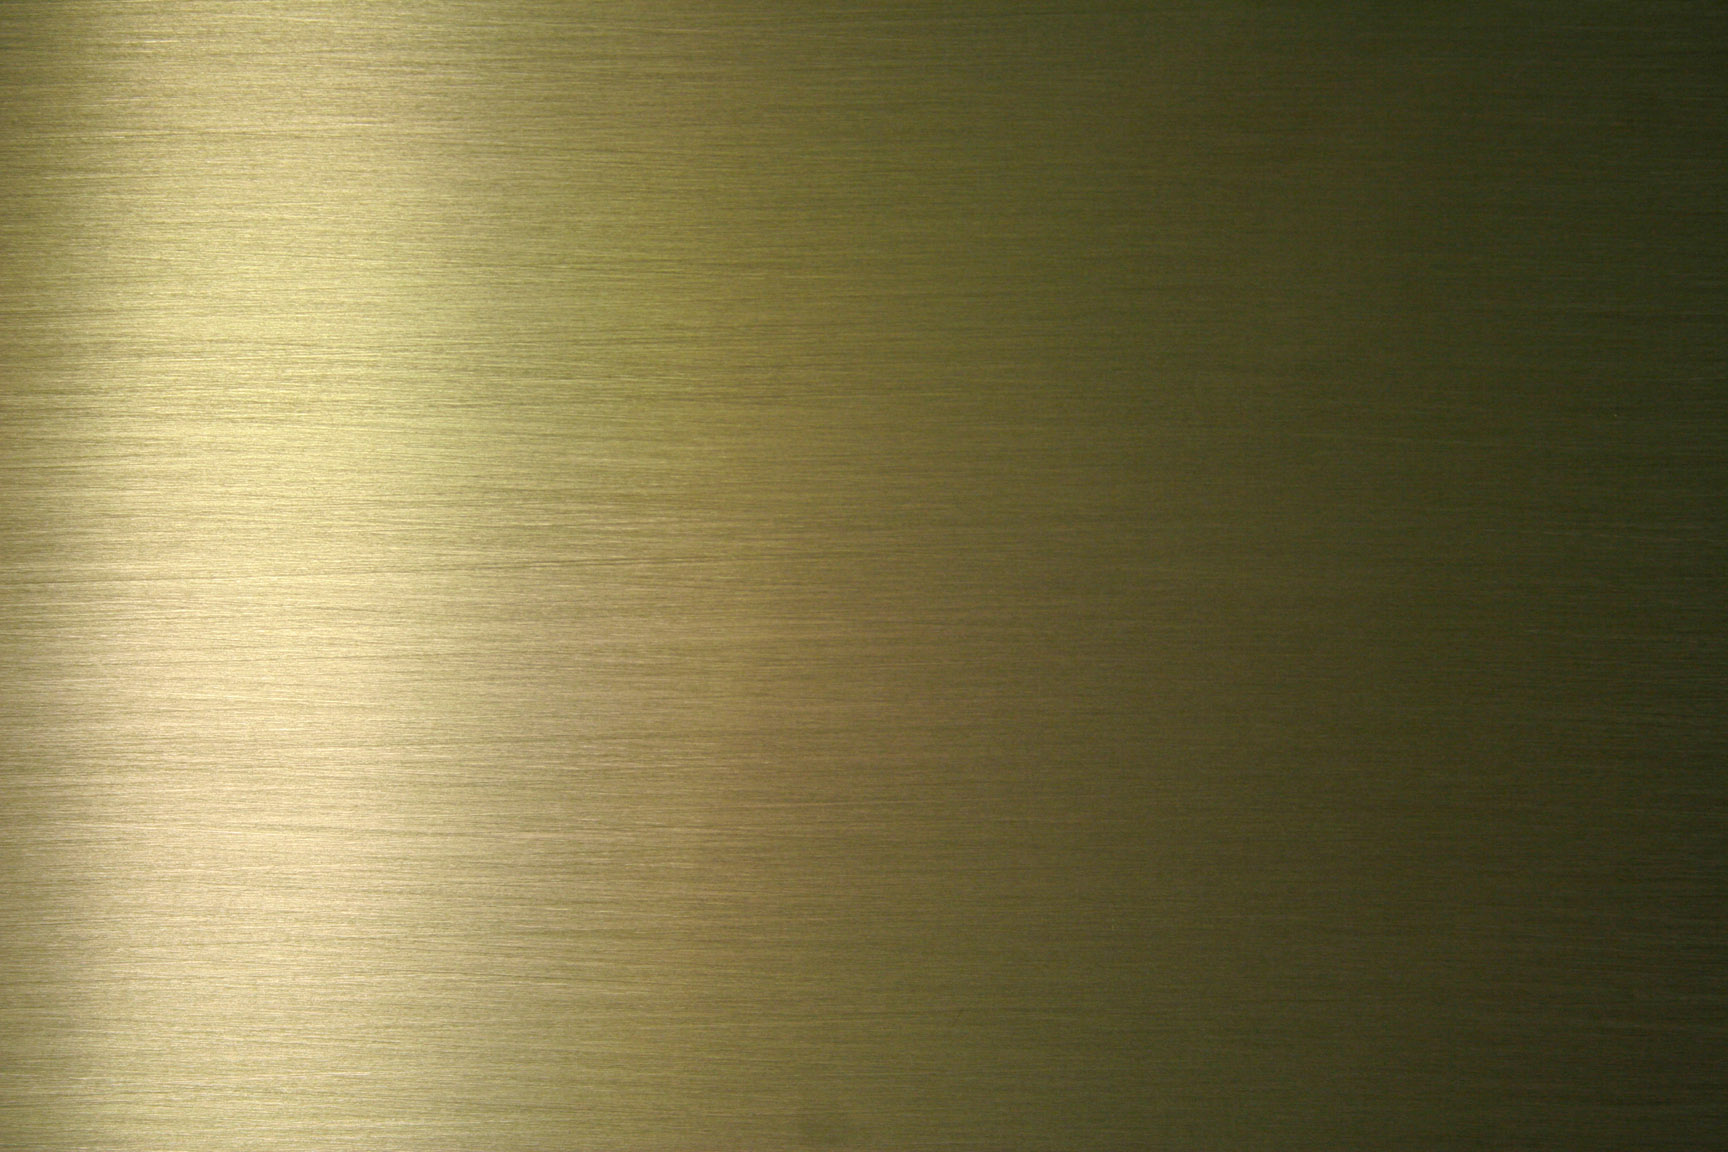 Matte Gold Metal Texture - 1728x1152 Wallpaper 